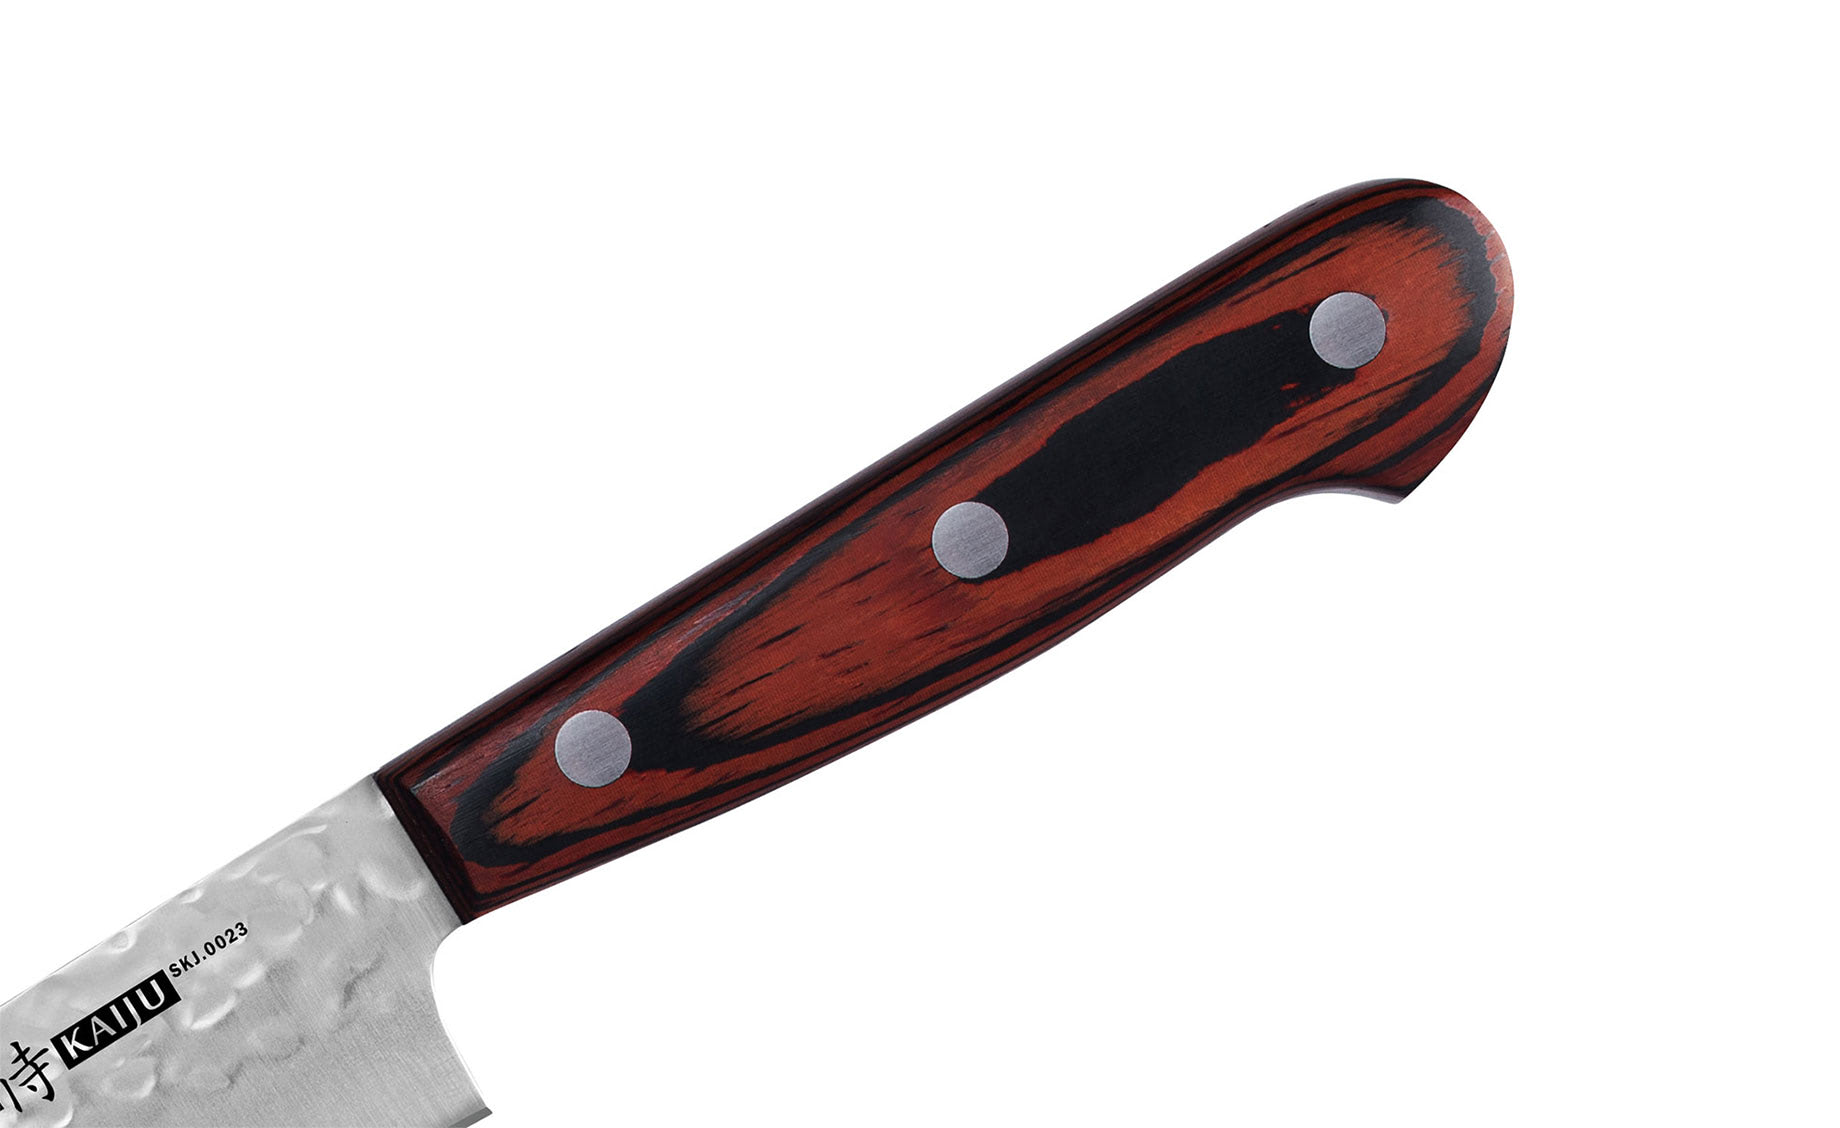 Samura Kaiju Utility nož 15cm